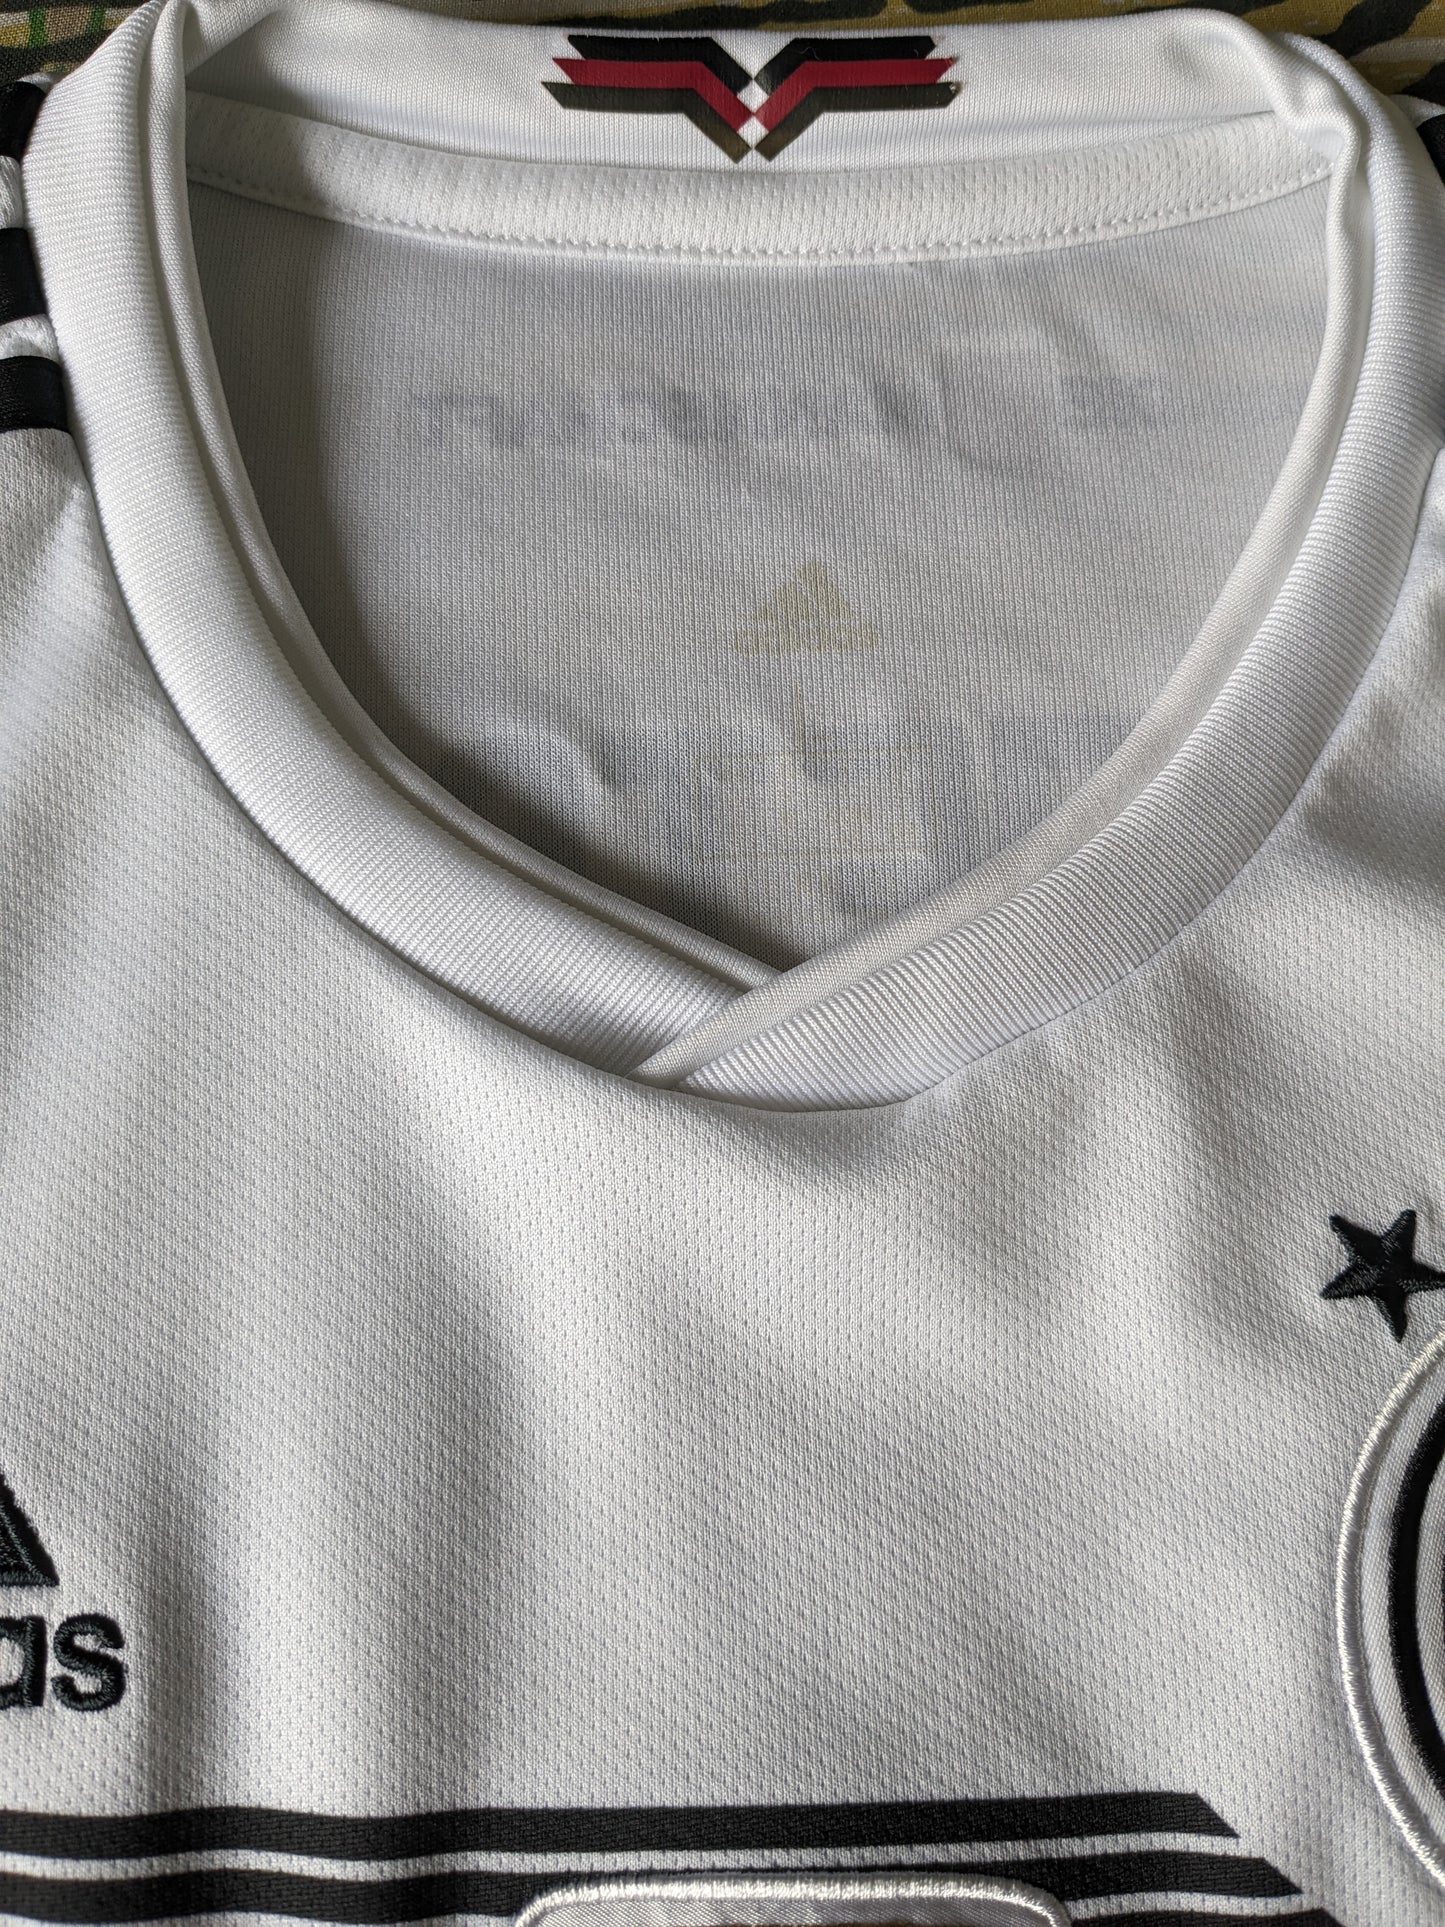 Chemise Adidas Deutscher Fussball Bund. Couleur noir blanc. FIFA 2014. Taille M.